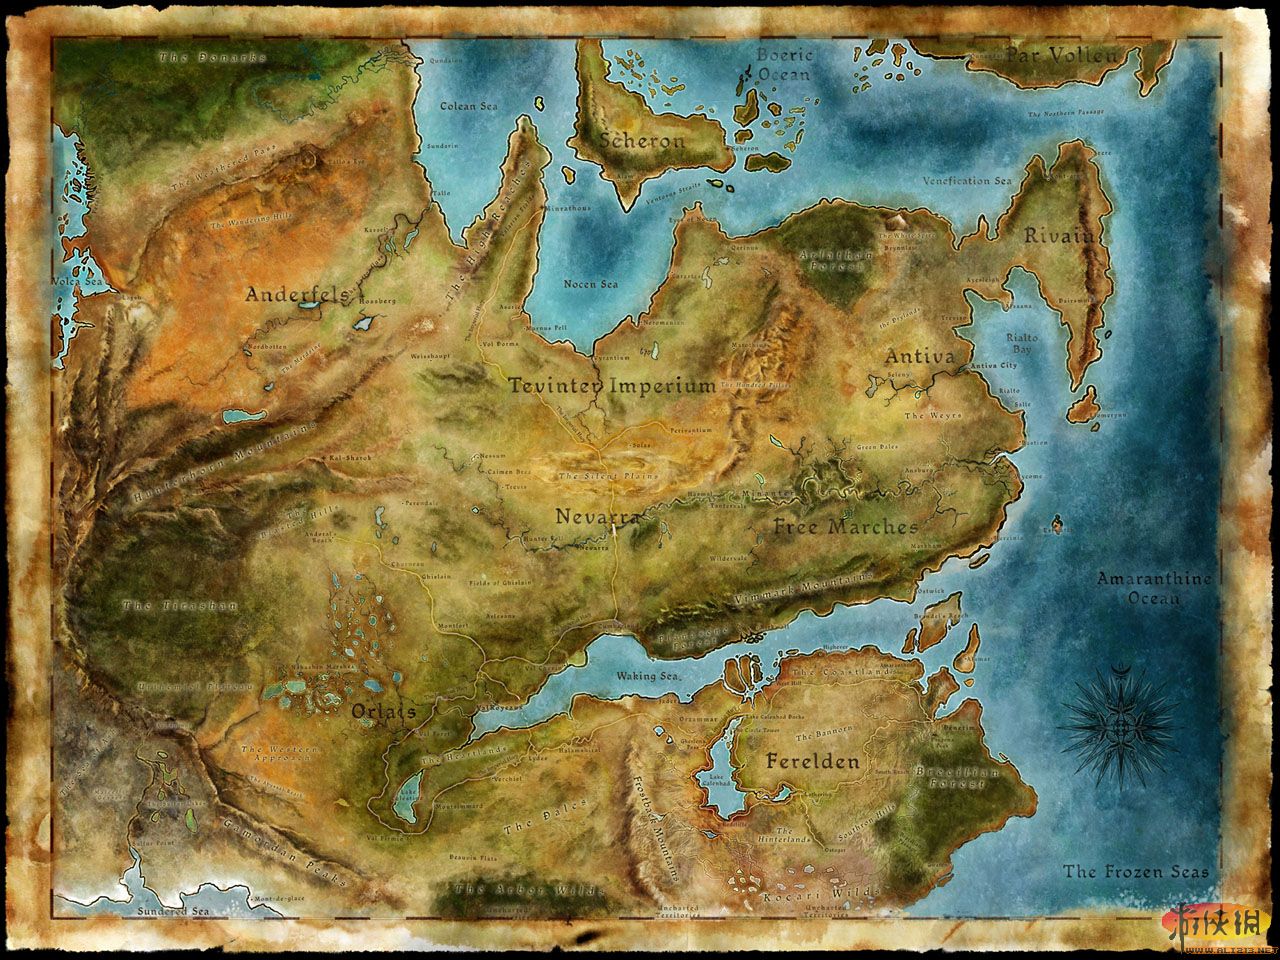 《龙腾世纪2》大地图,不知道有没有人发过